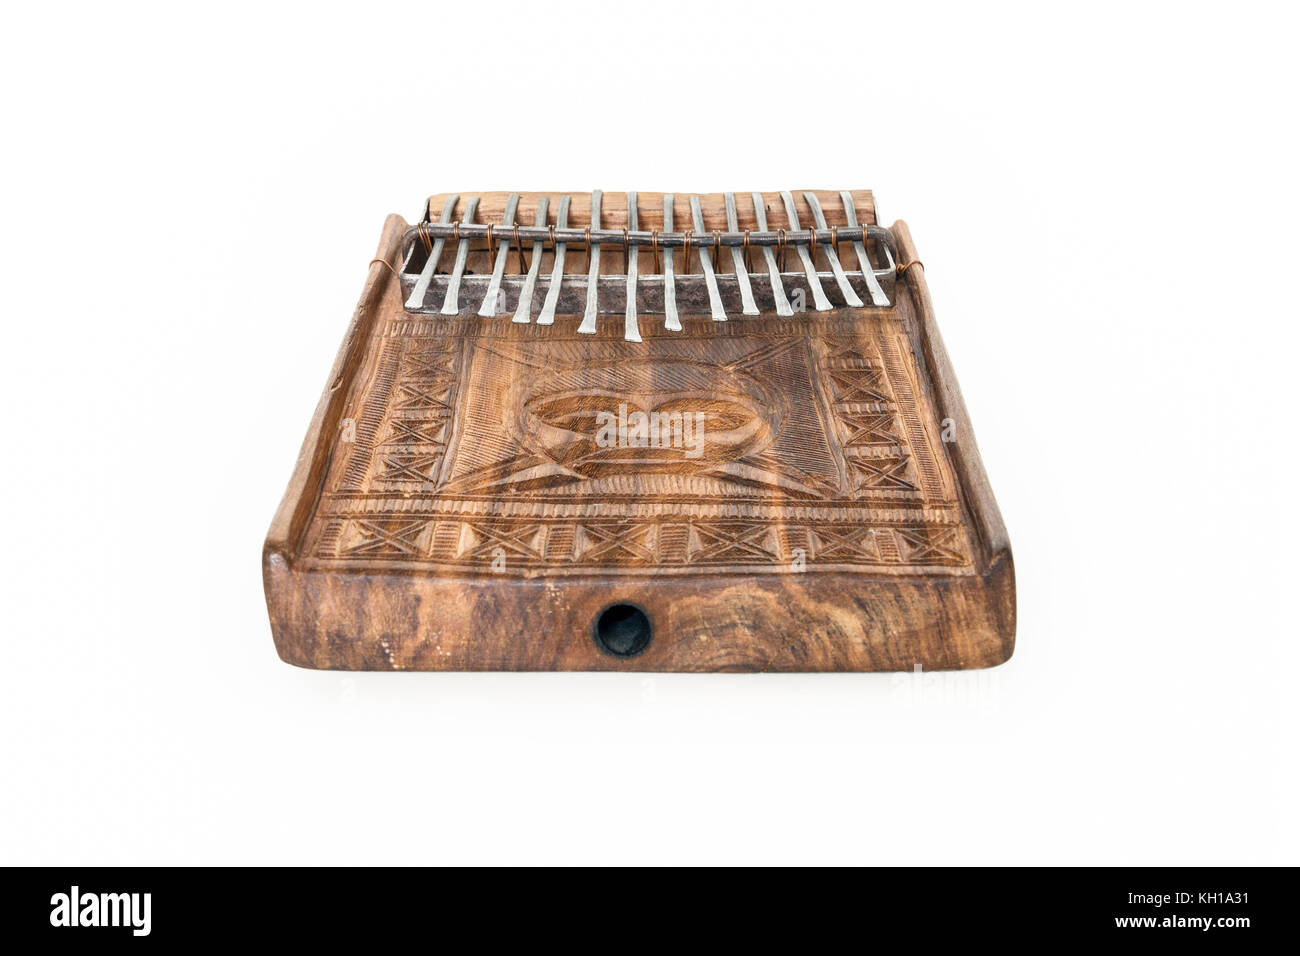 Traditionelle Mbira, ein Afrikanisches Musikinstrument, bestehend aus einem Resonanzboden aus Holz und Metall zinkige Tasten, aus Simbabwe Stockfoto